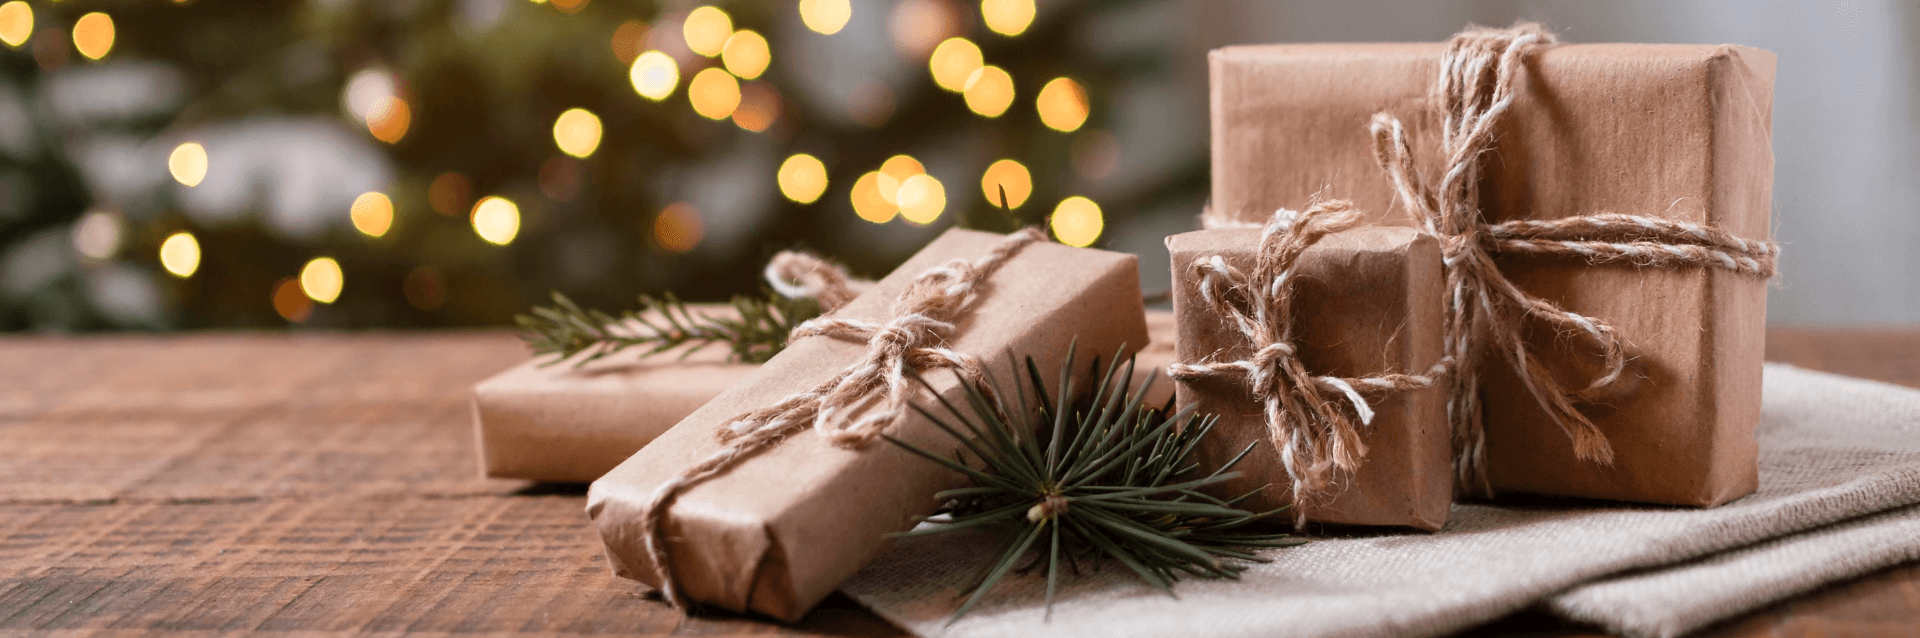 Co kupić na prezent świąteczny? Prezenty na święta last minute